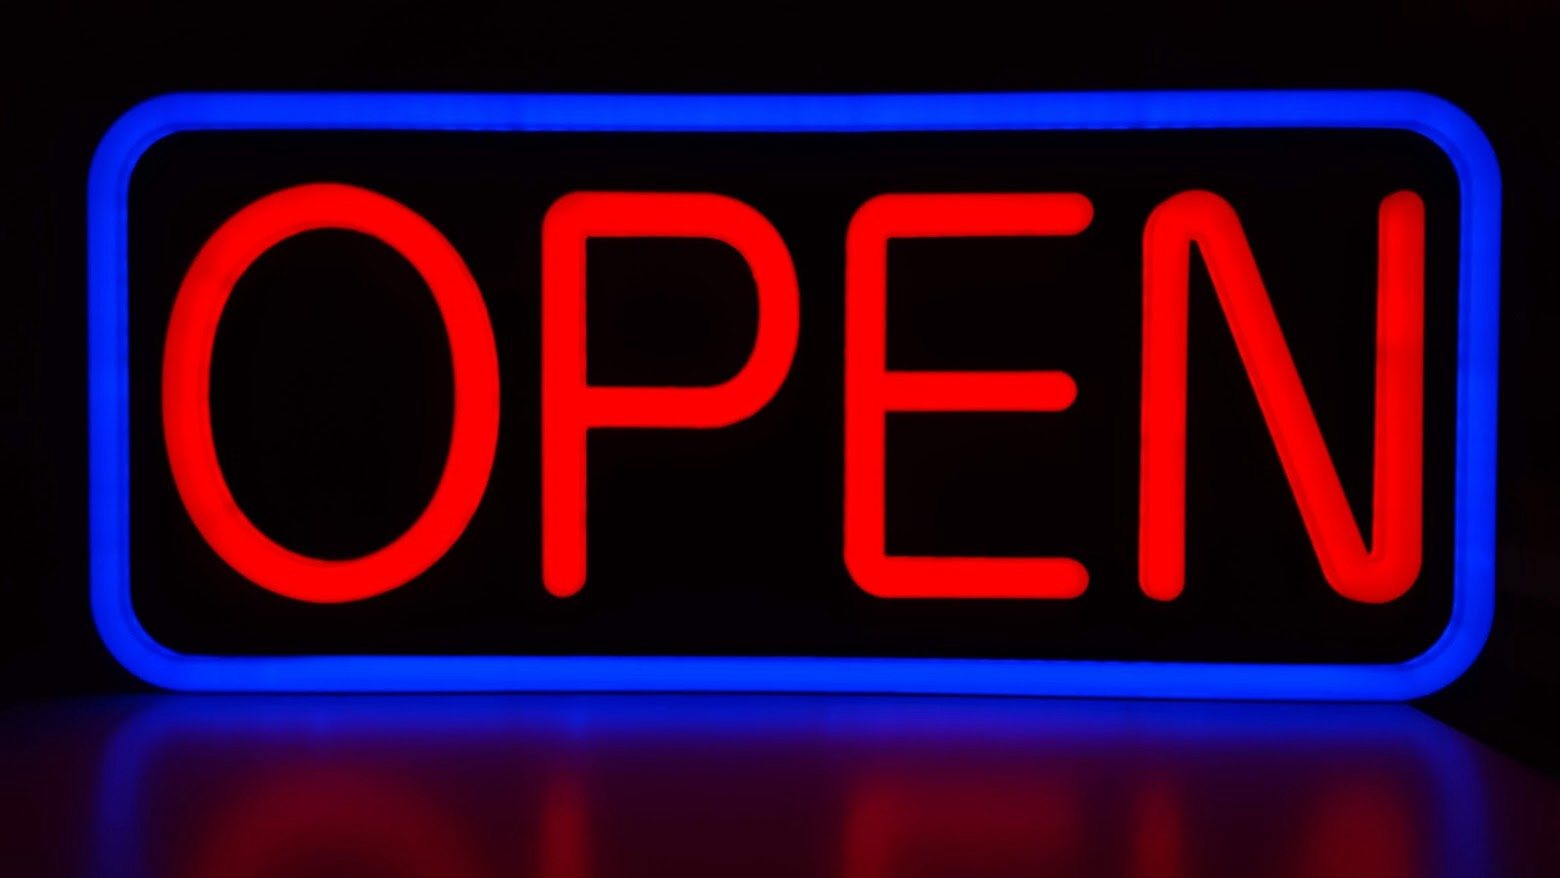 Geöffnet Open Geschäft Laden LED Leuchtschild Schild Deko Zeichen Bild sign